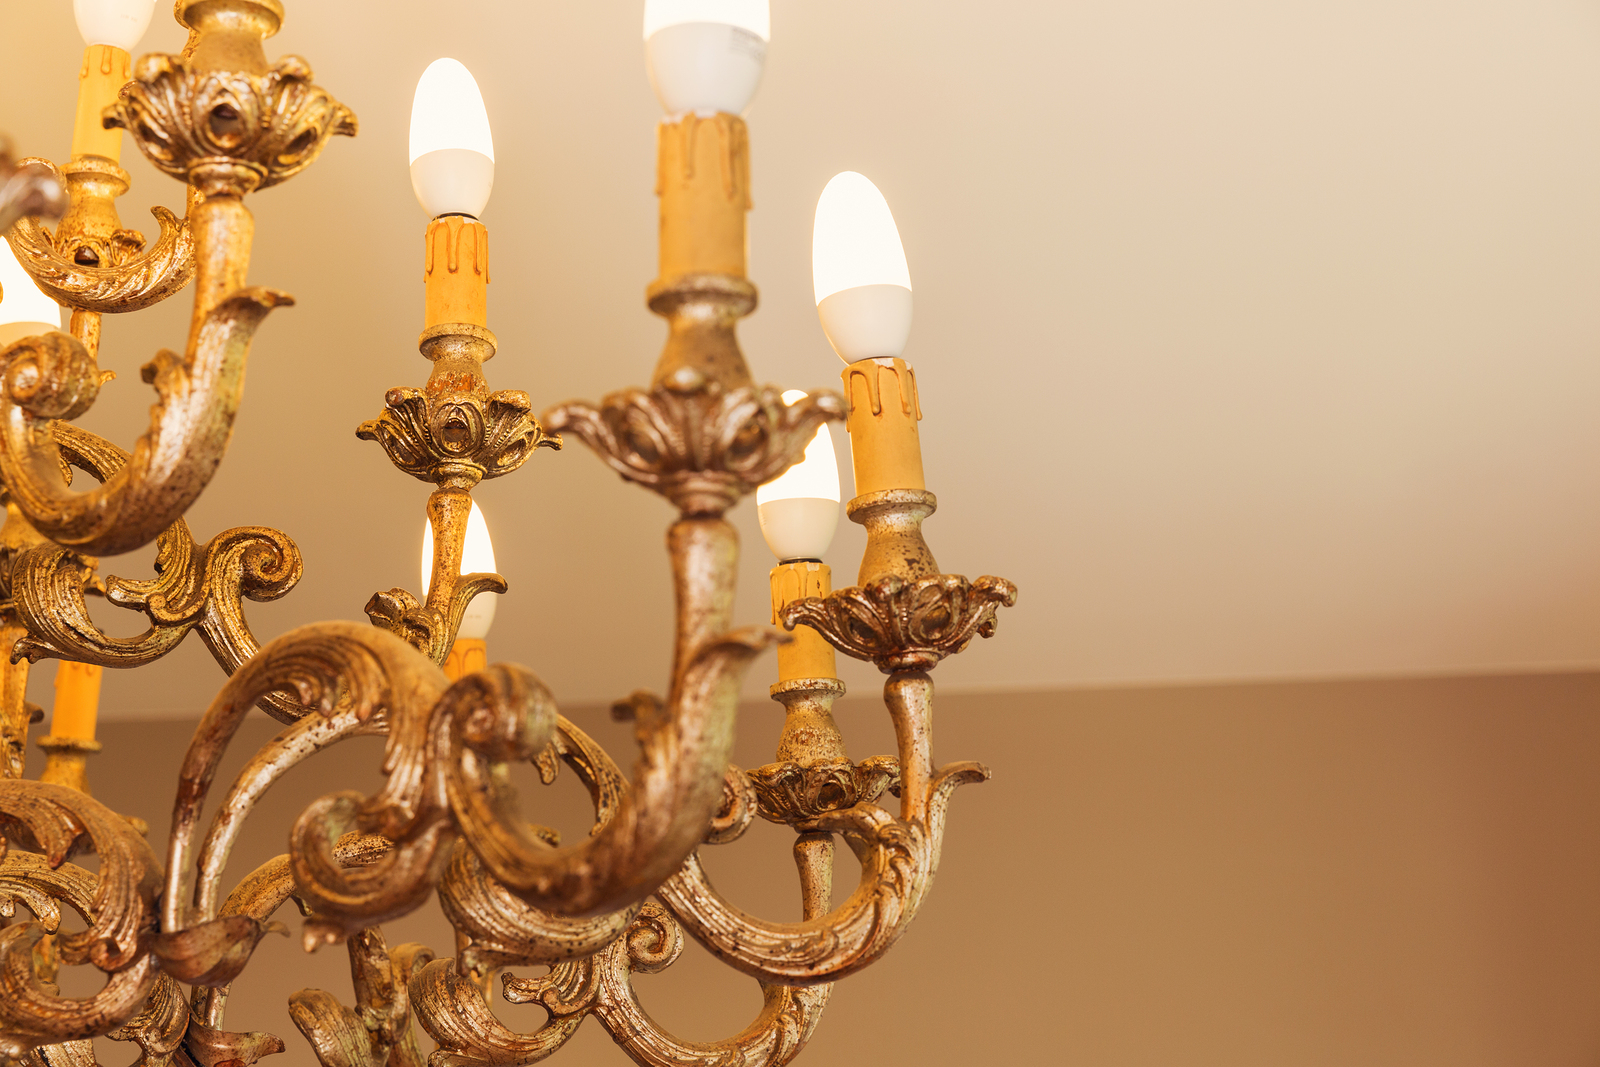 Detail of chandelier alight, golden